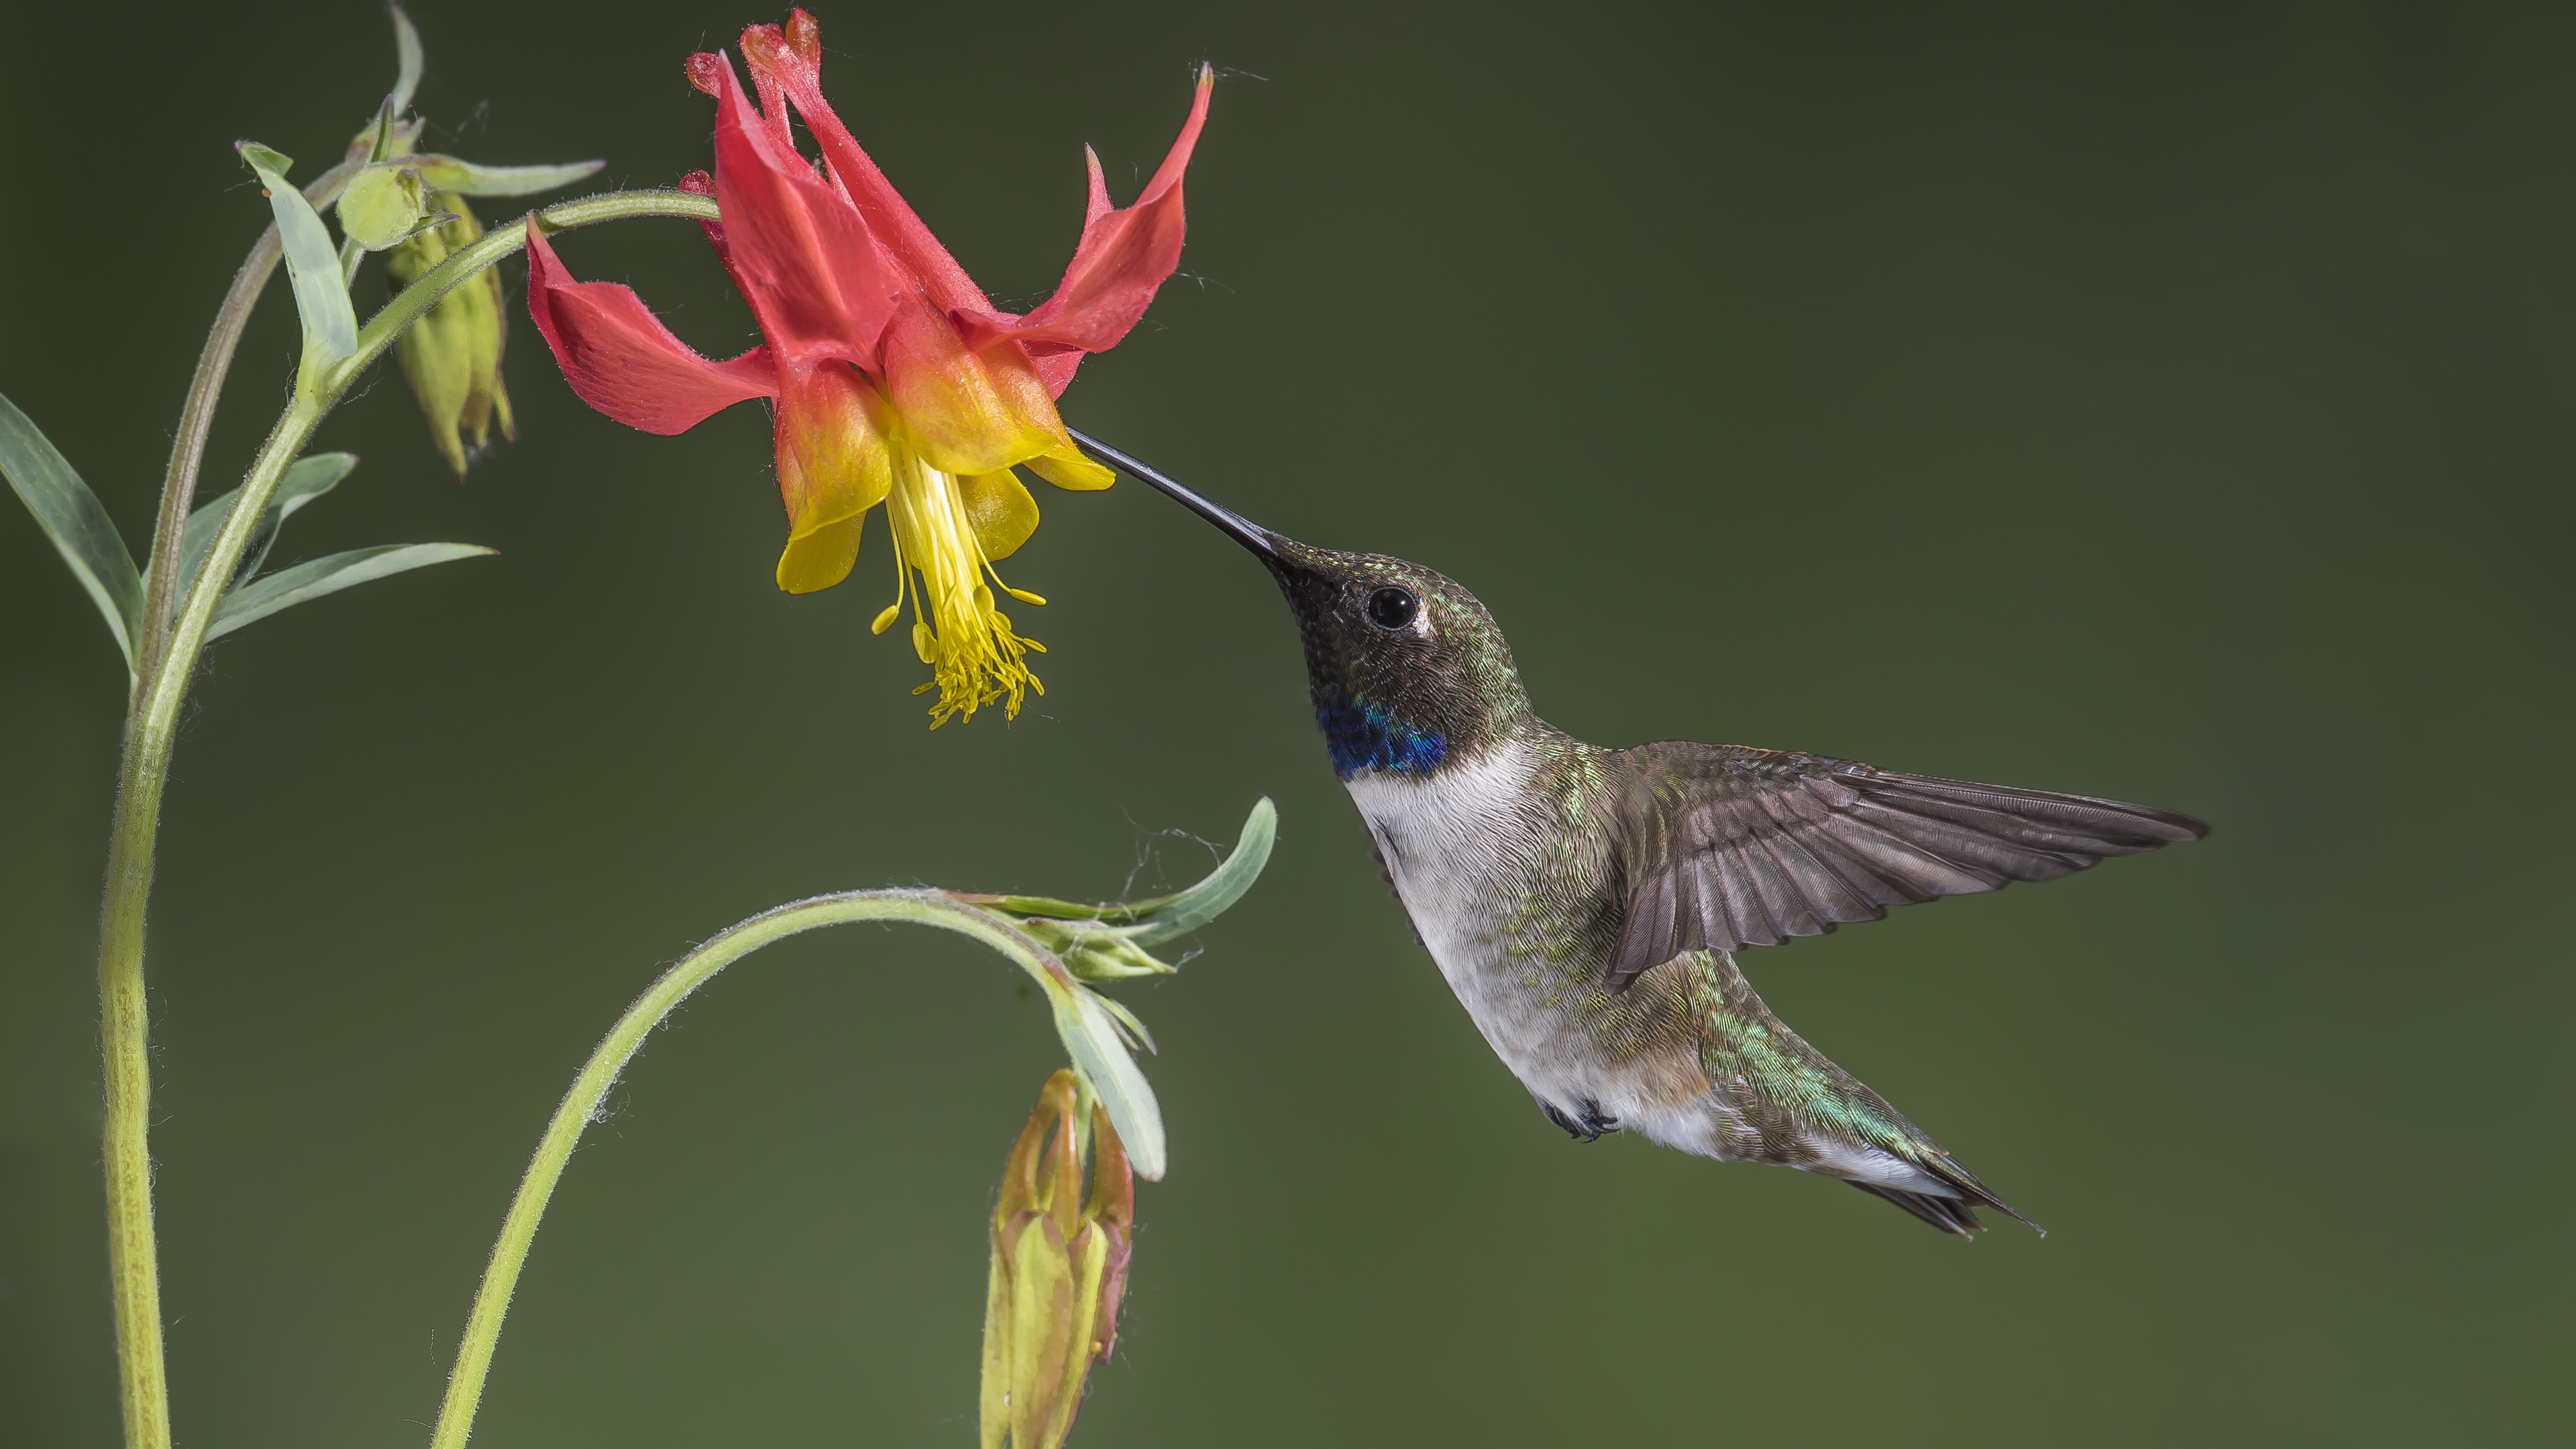 A hummingbird eats nectar from a flower with its long beak